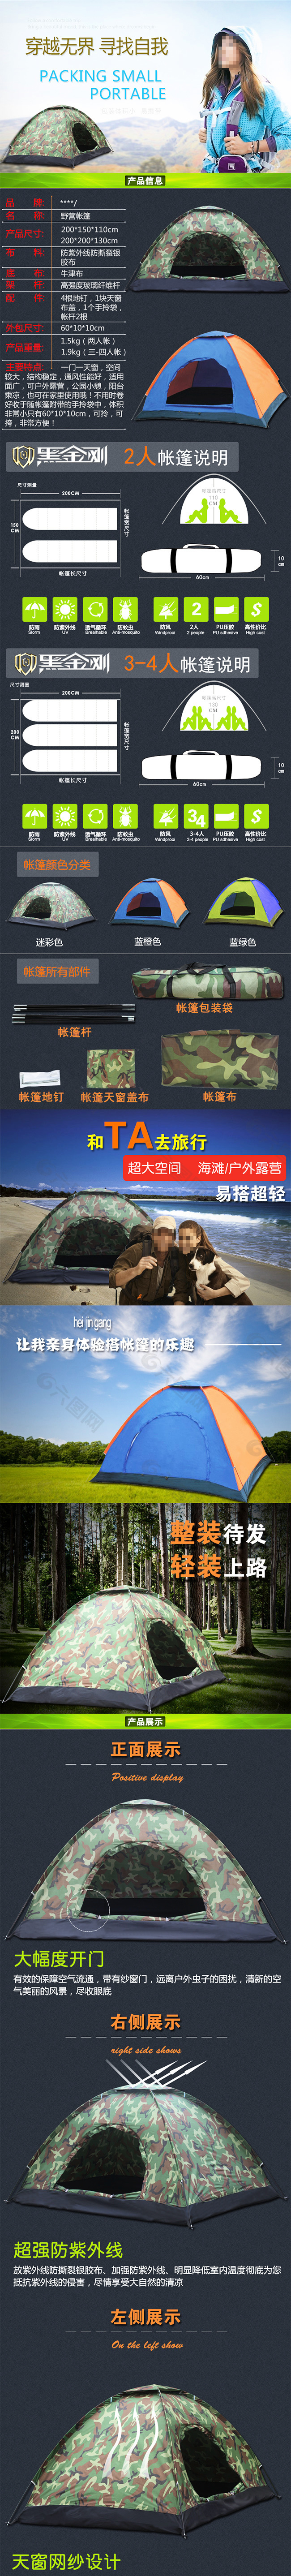 双人迷色户外旅游野营帐篷产品详情页